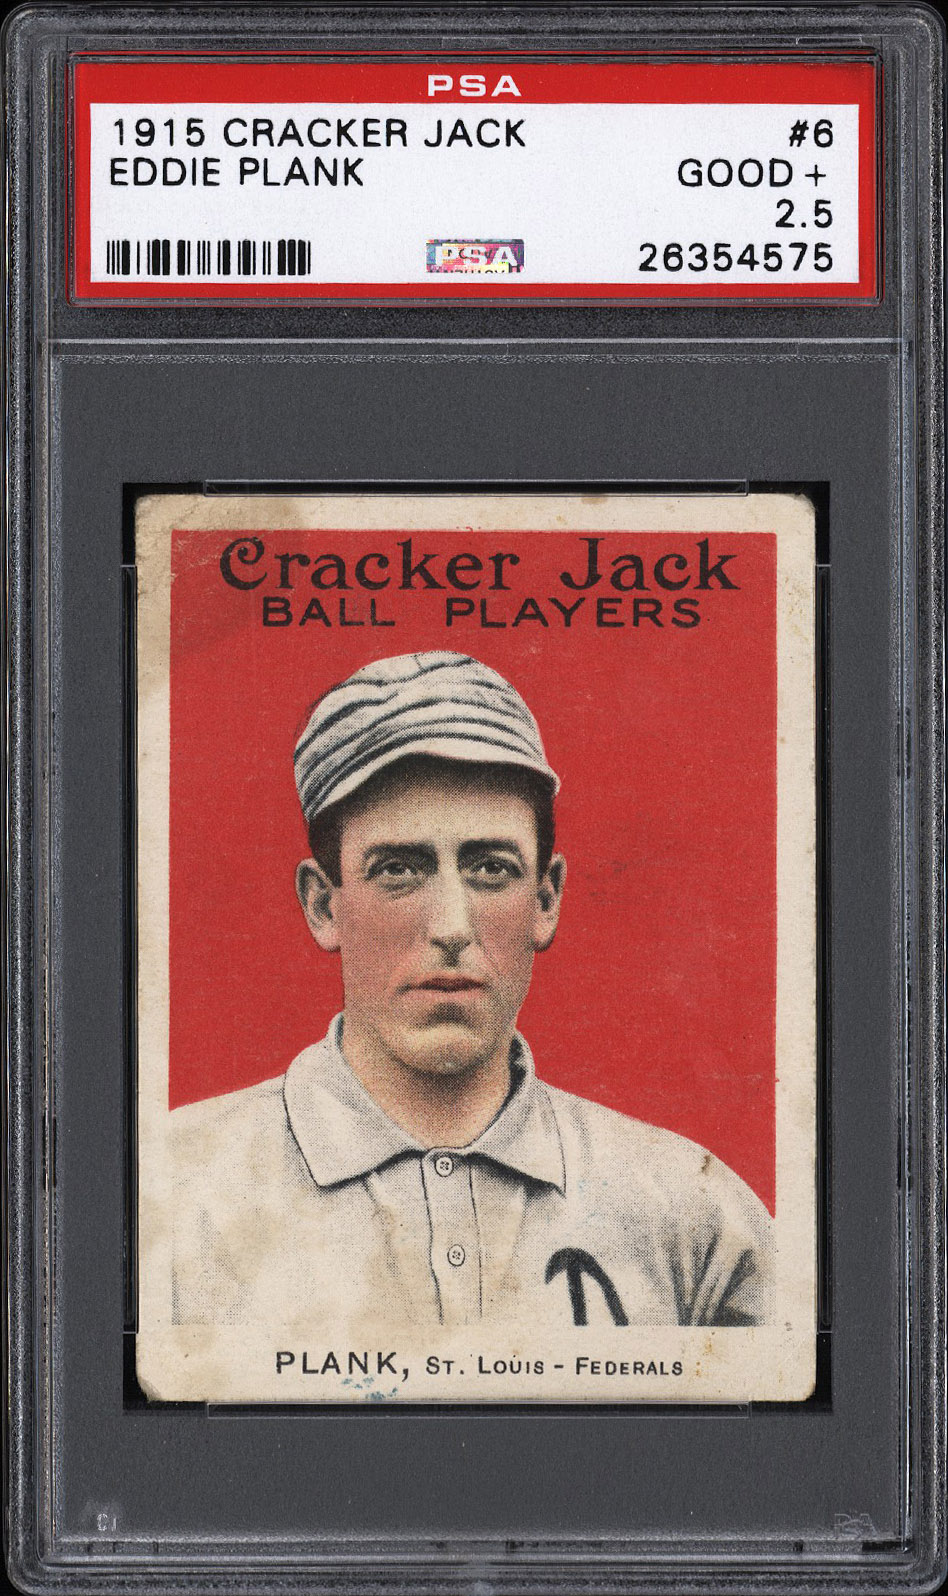  1915 Cracker Jack #6 Eddie Plank (HOF) - PSA GOOD+ 2.5